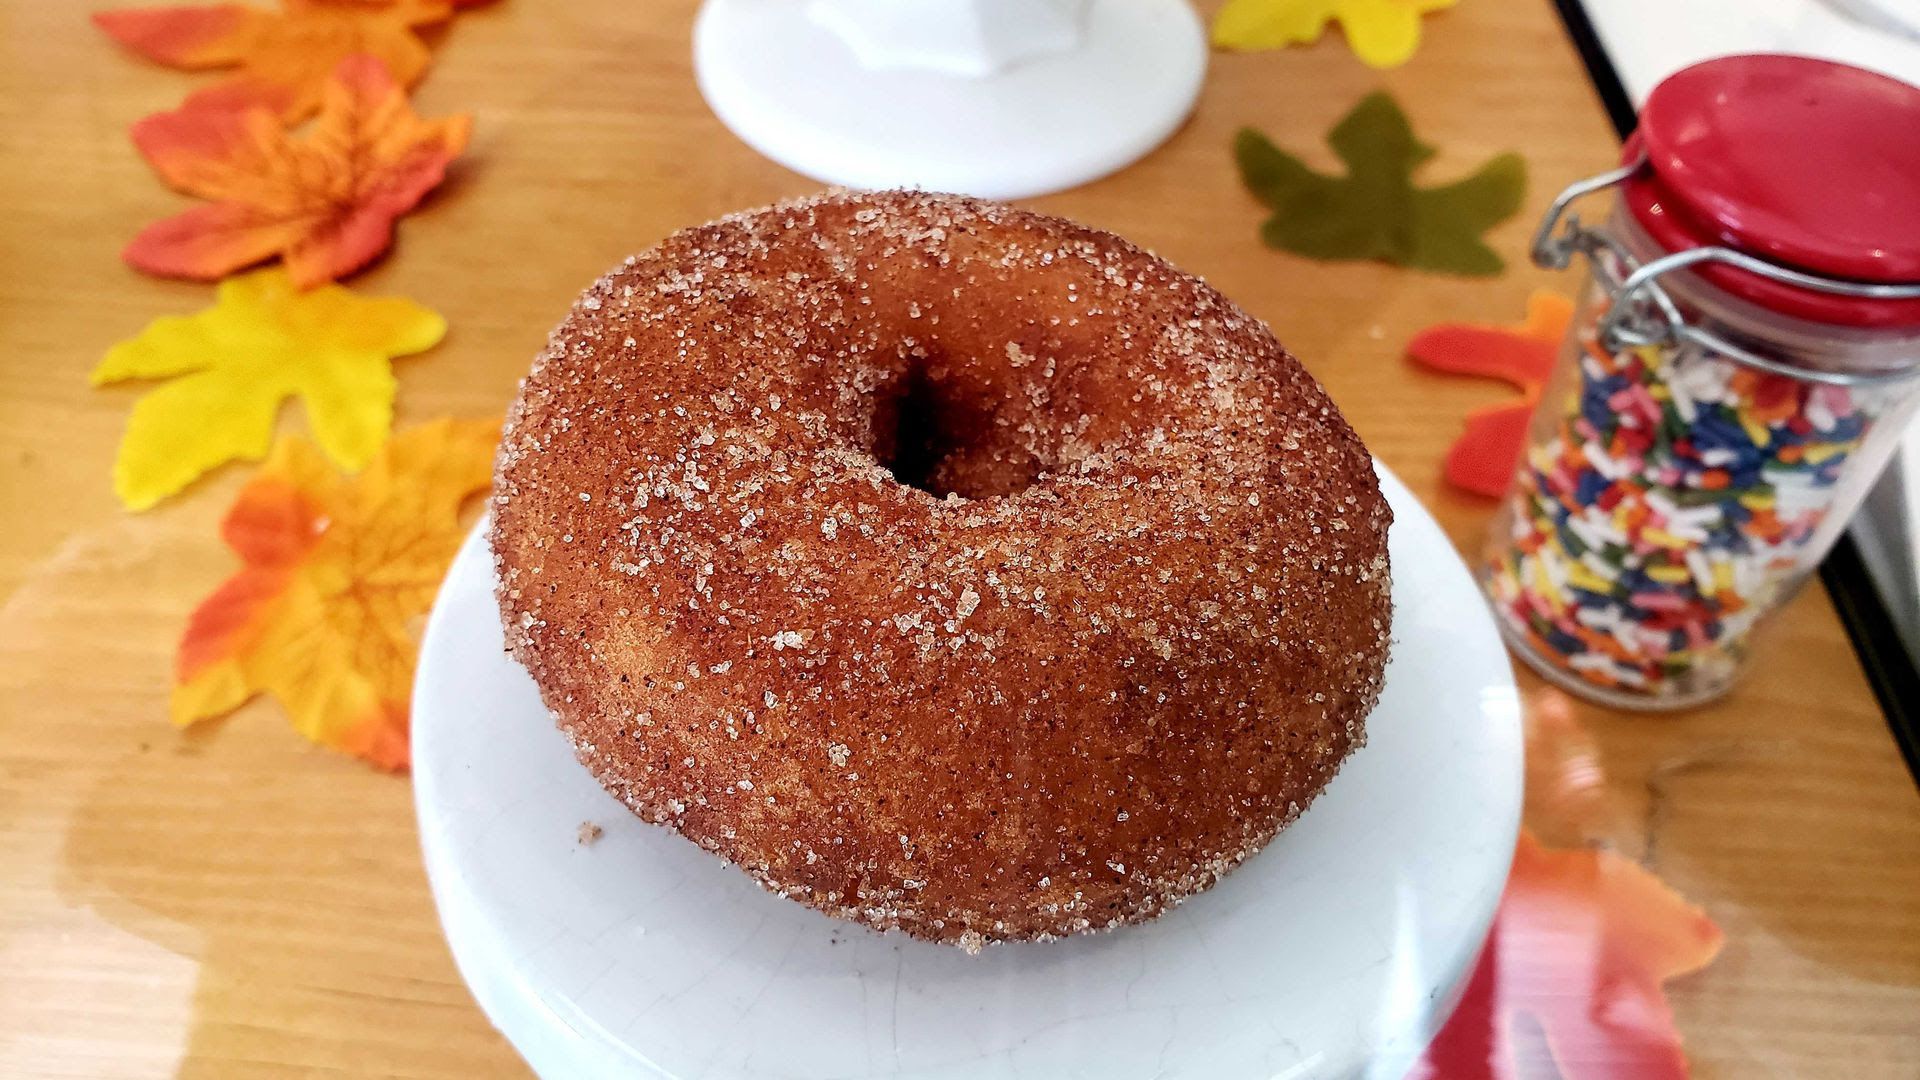 Apple cider doughnut at Dip and Sip Donuts. Photo: Monica Eng/Axios